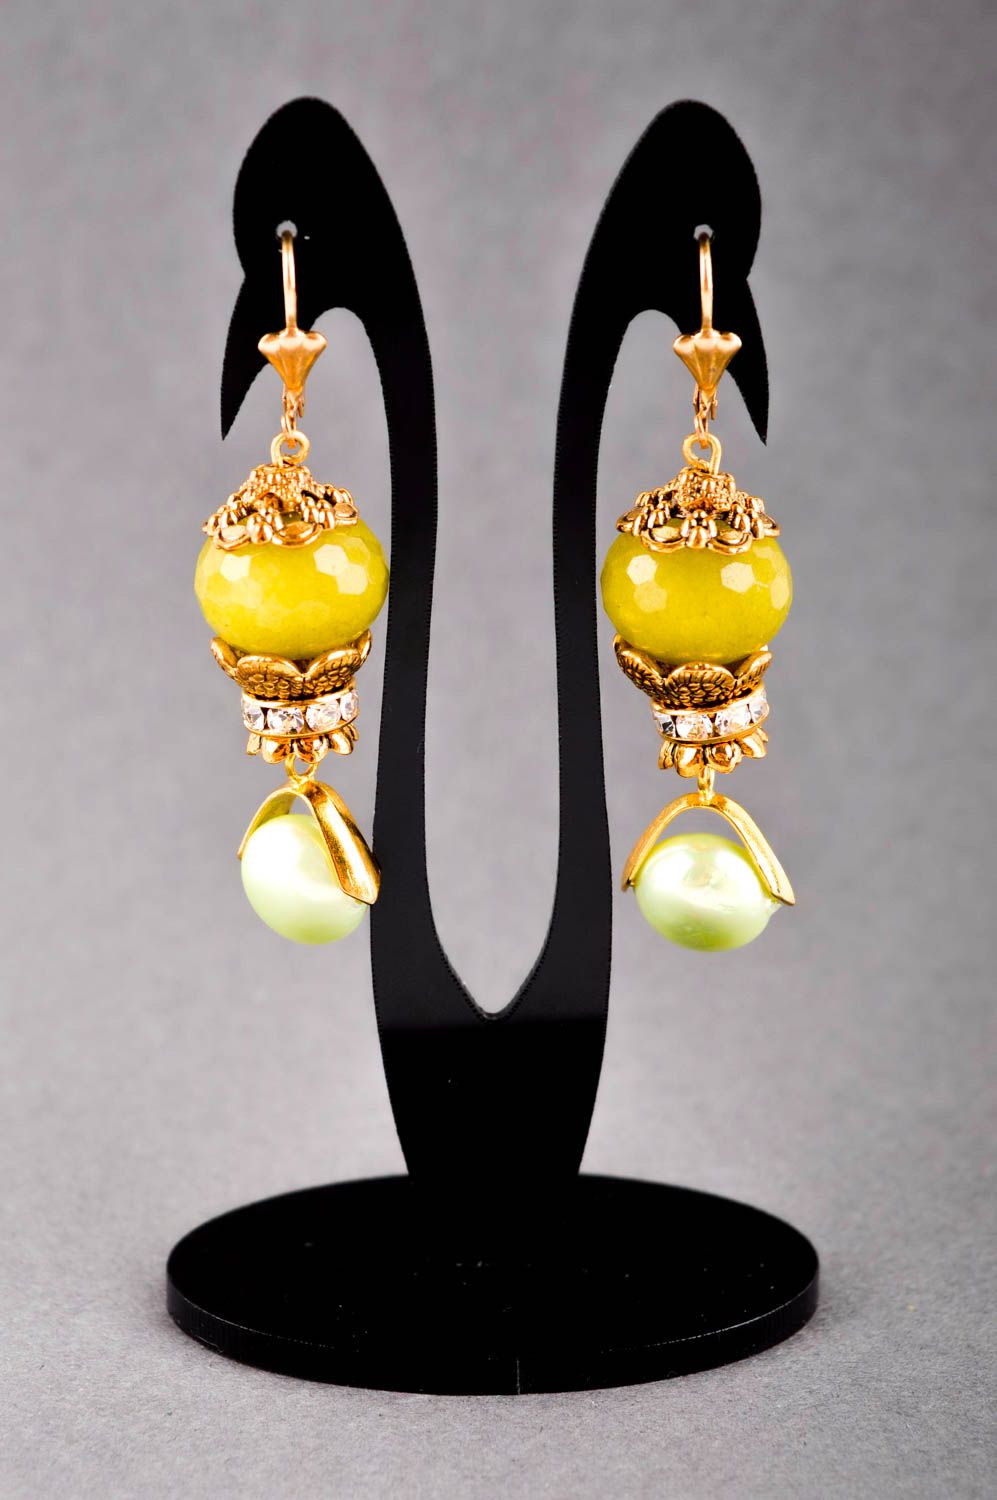 Handmade earrings designer earrings with charms stone earrings for women photo 1